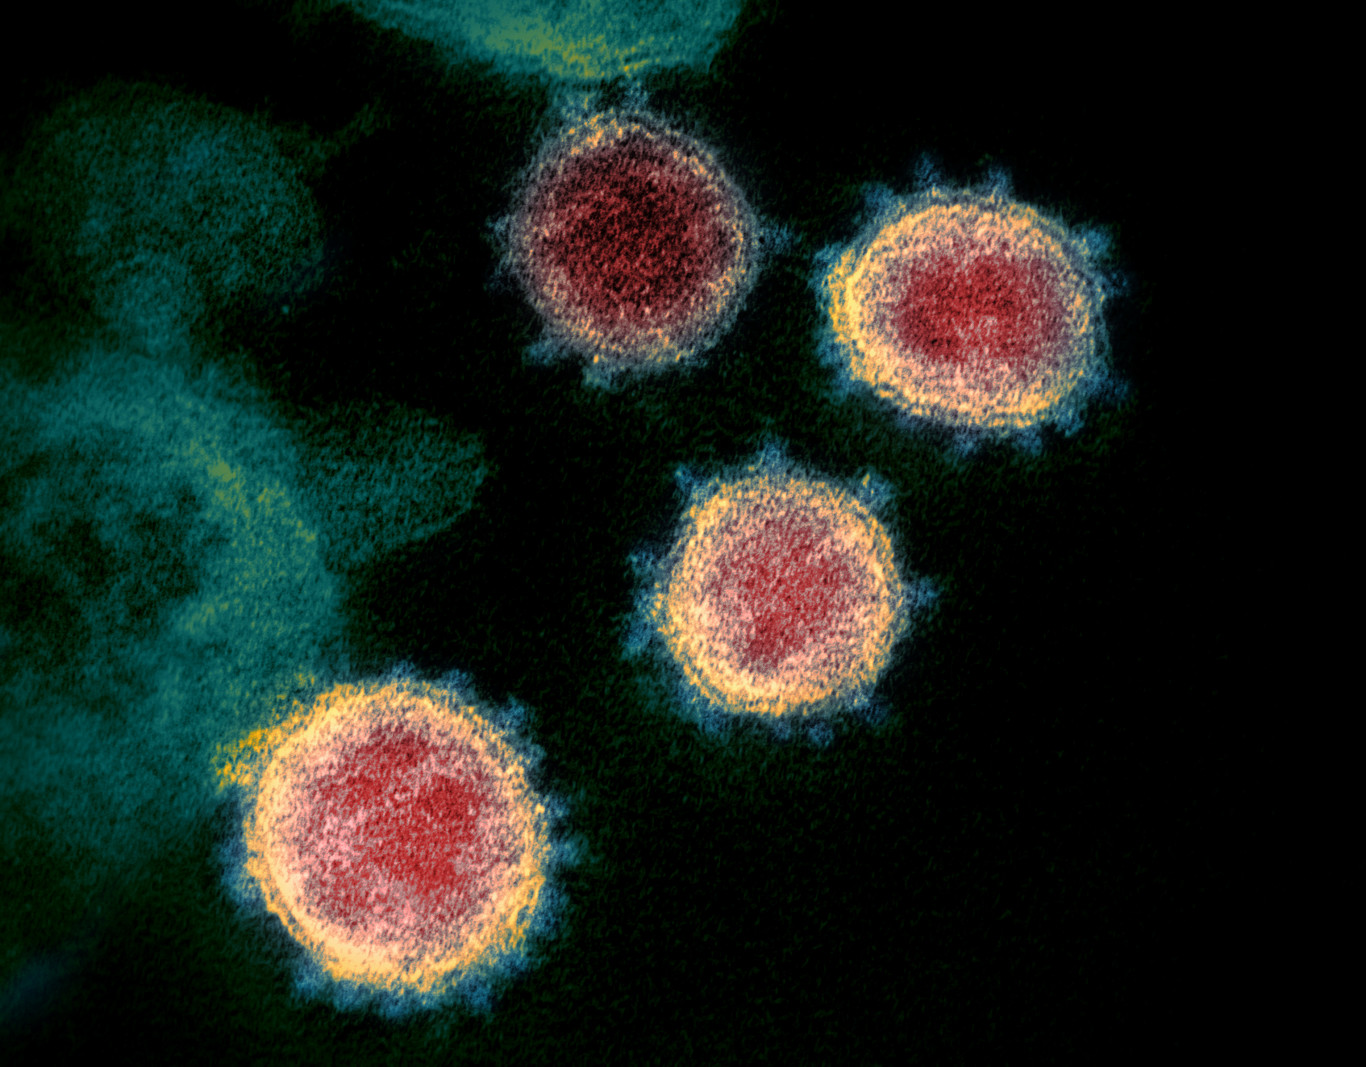 Több országban is kisebb pánikot keltett a koronavírus újonnan megjelent variánsa, a B.1.1.529 – Qubit